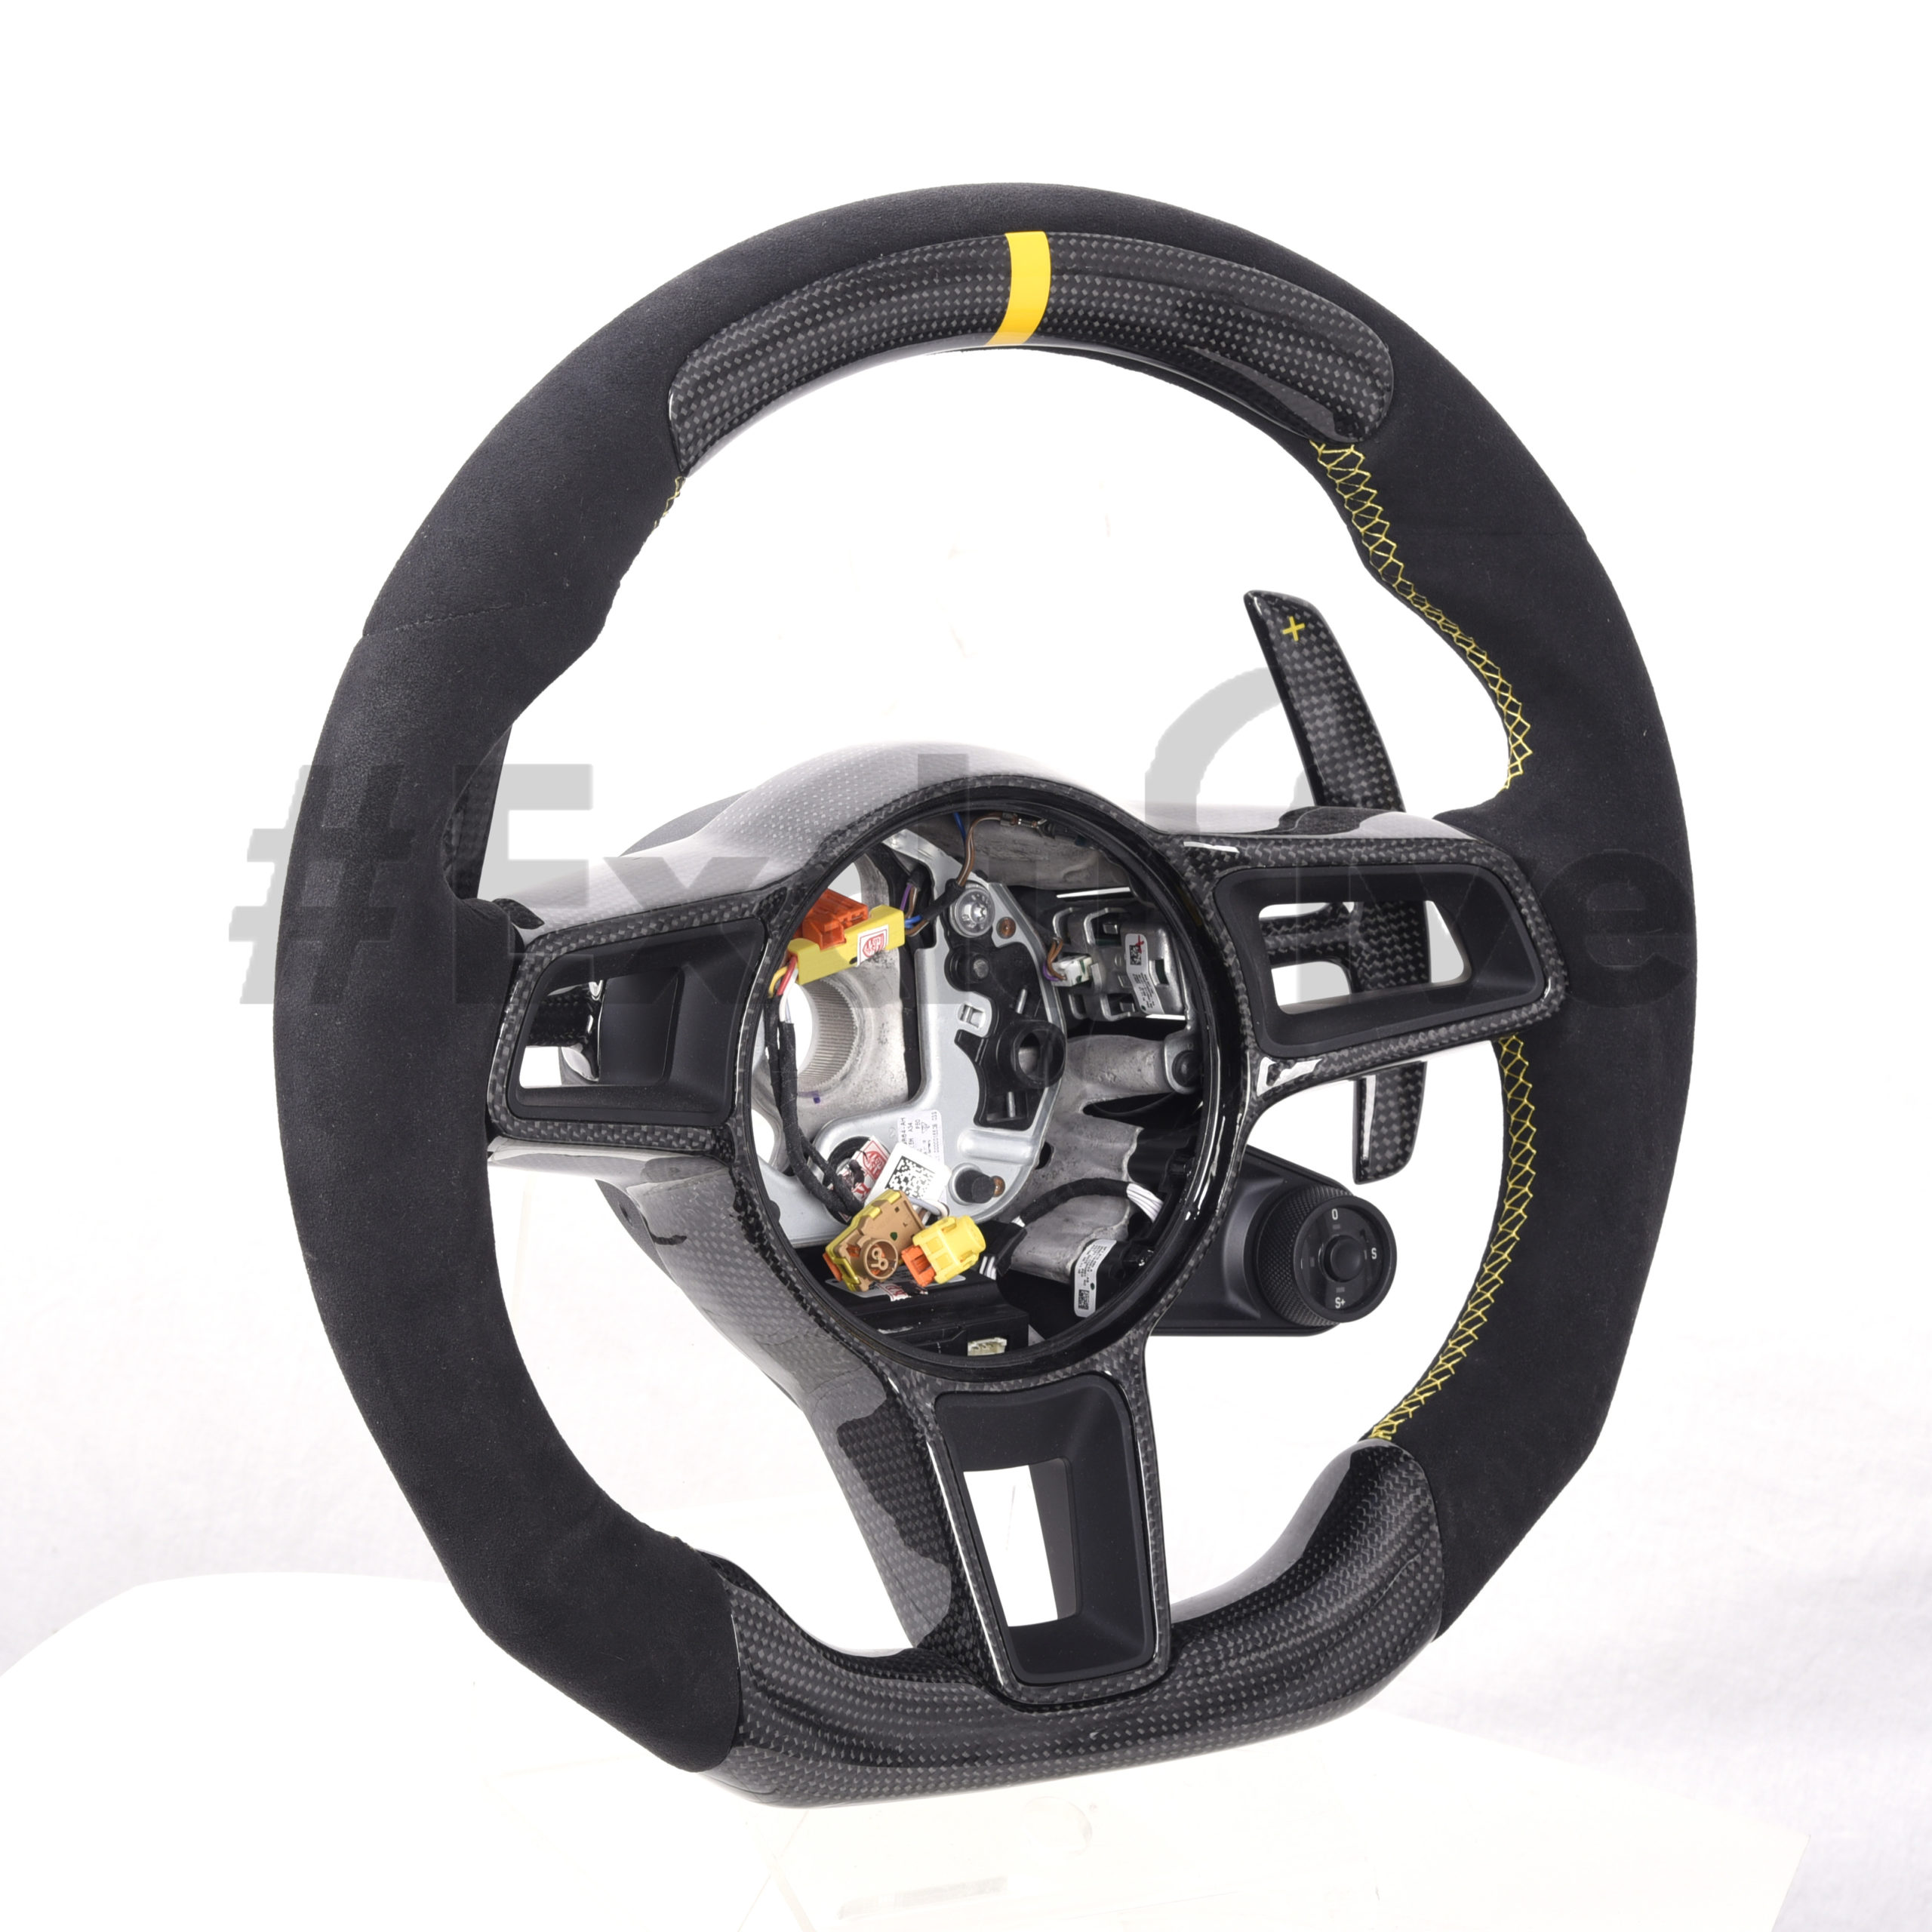 Genuine PORSCHE Multifunction Button Set For Steering Wheel 971959537Y6N3 